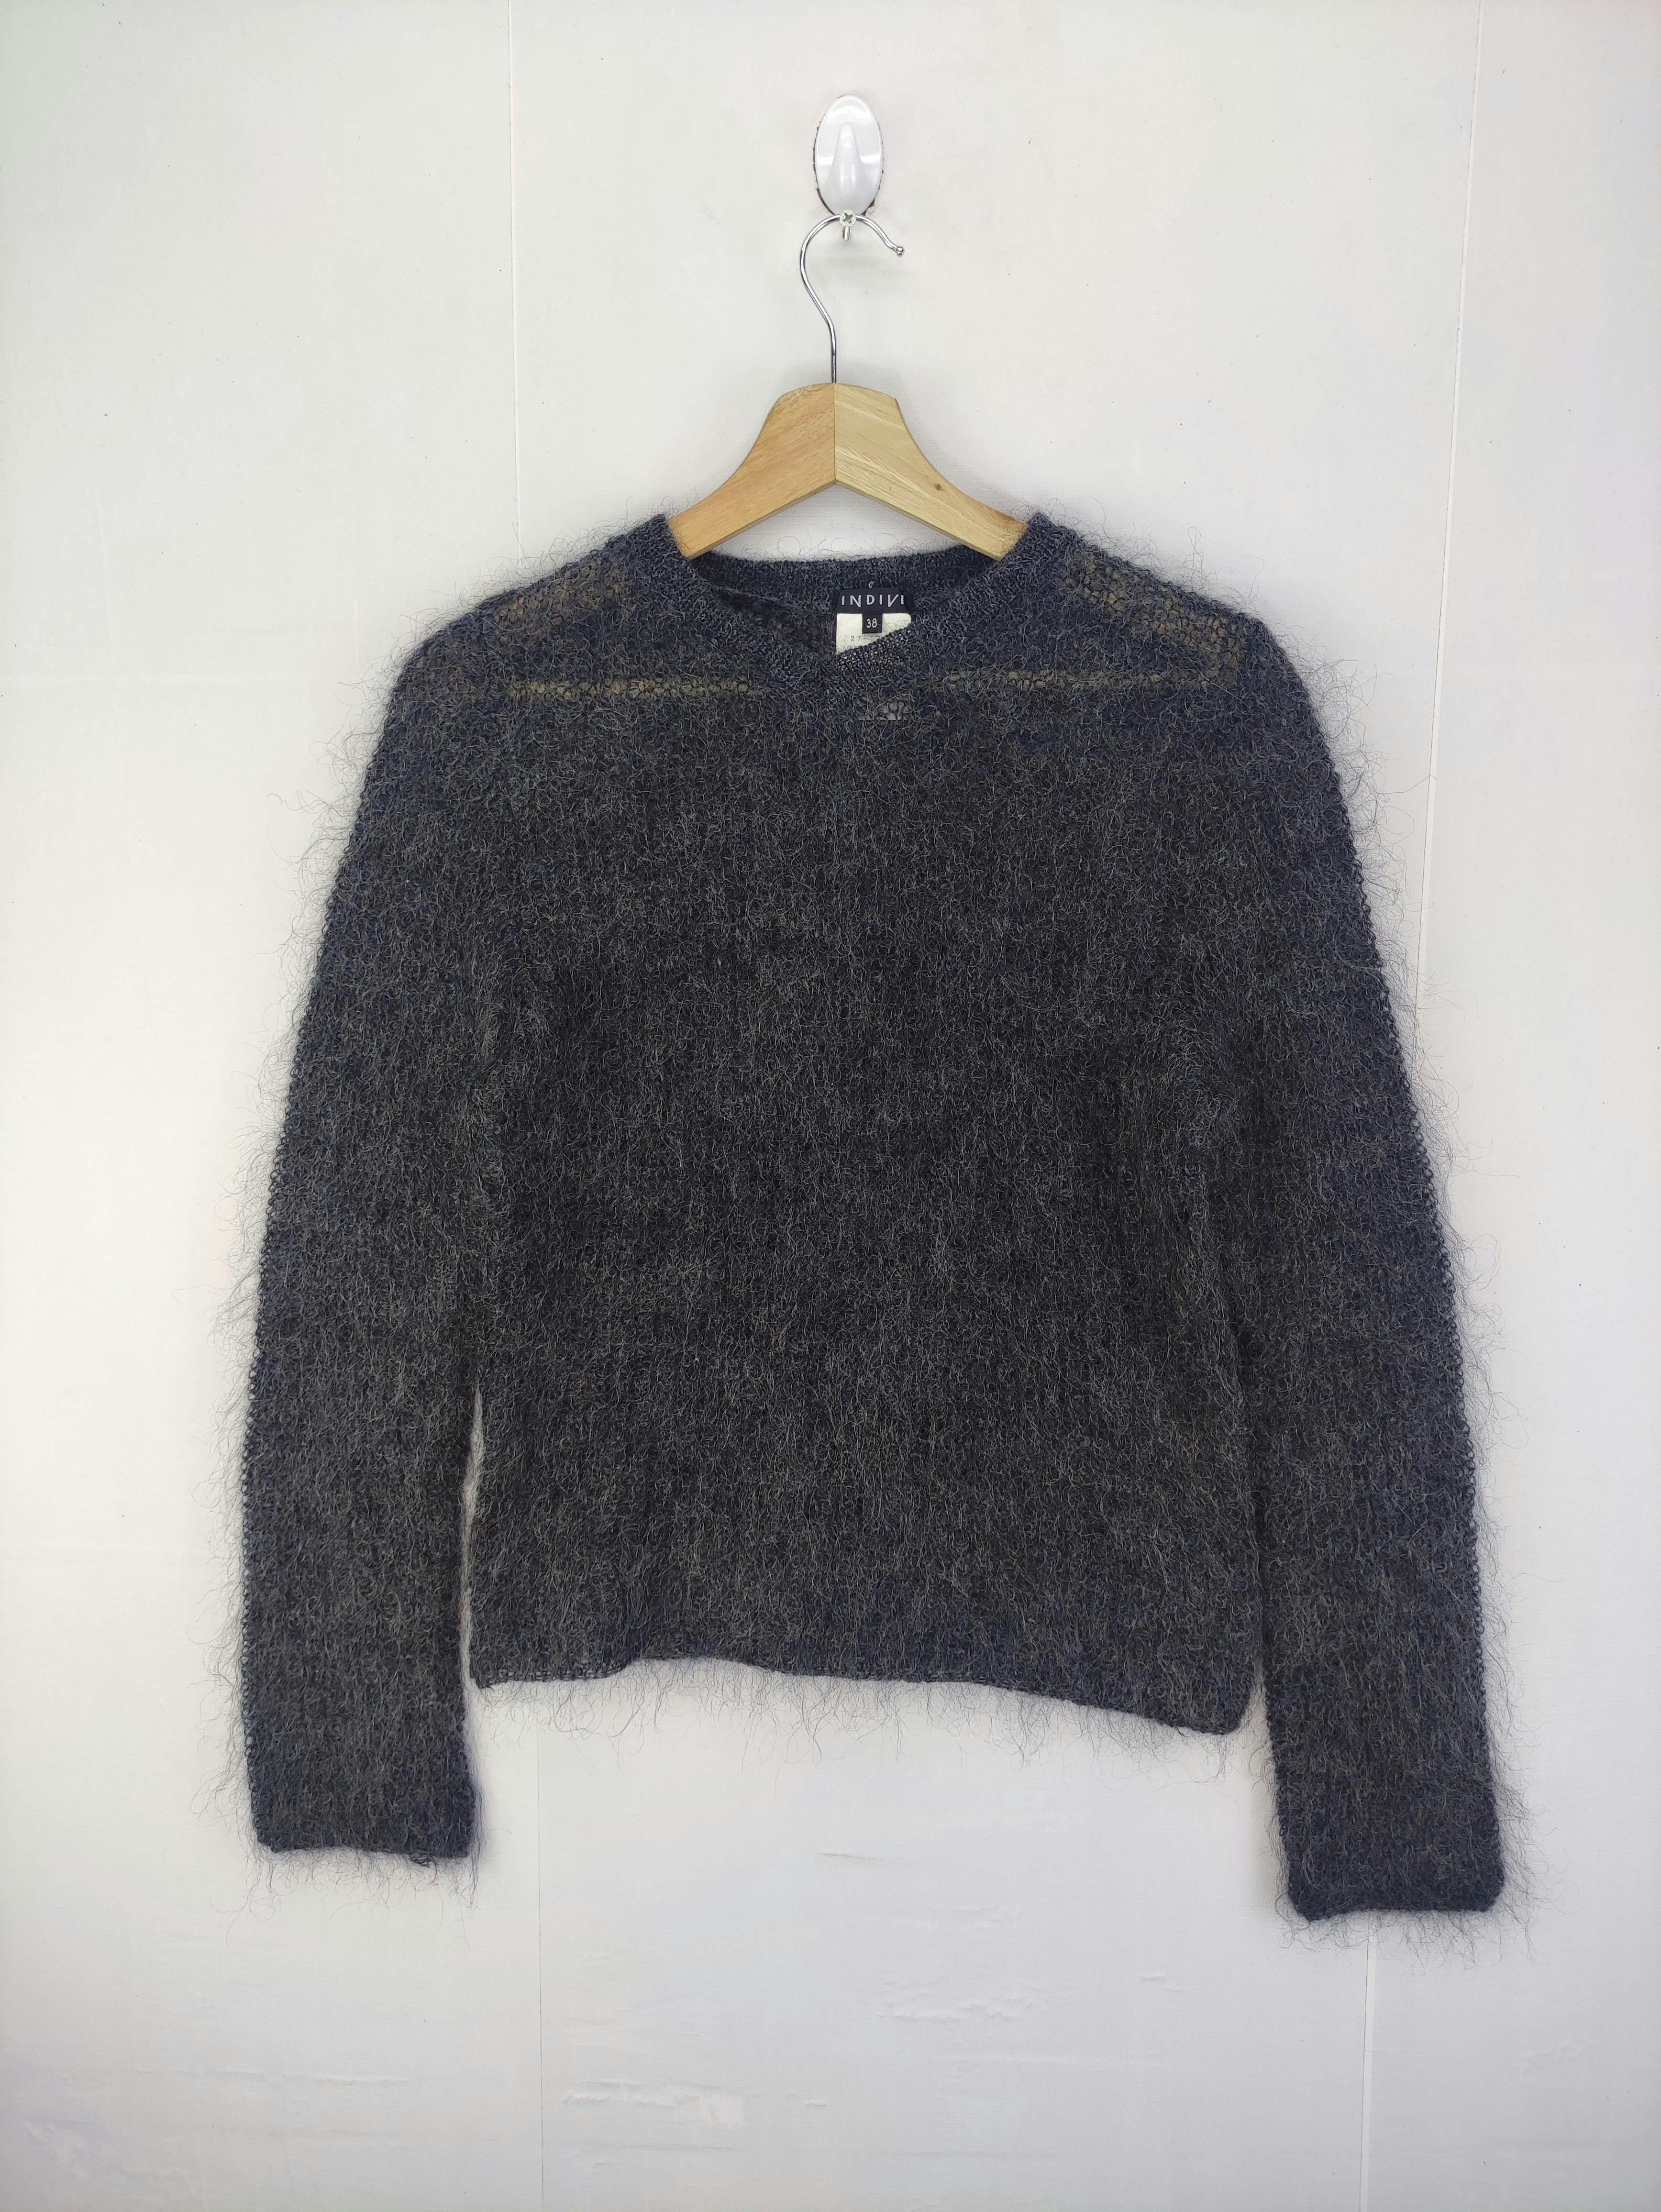 Vintage Indivi Wool Sweater - 1